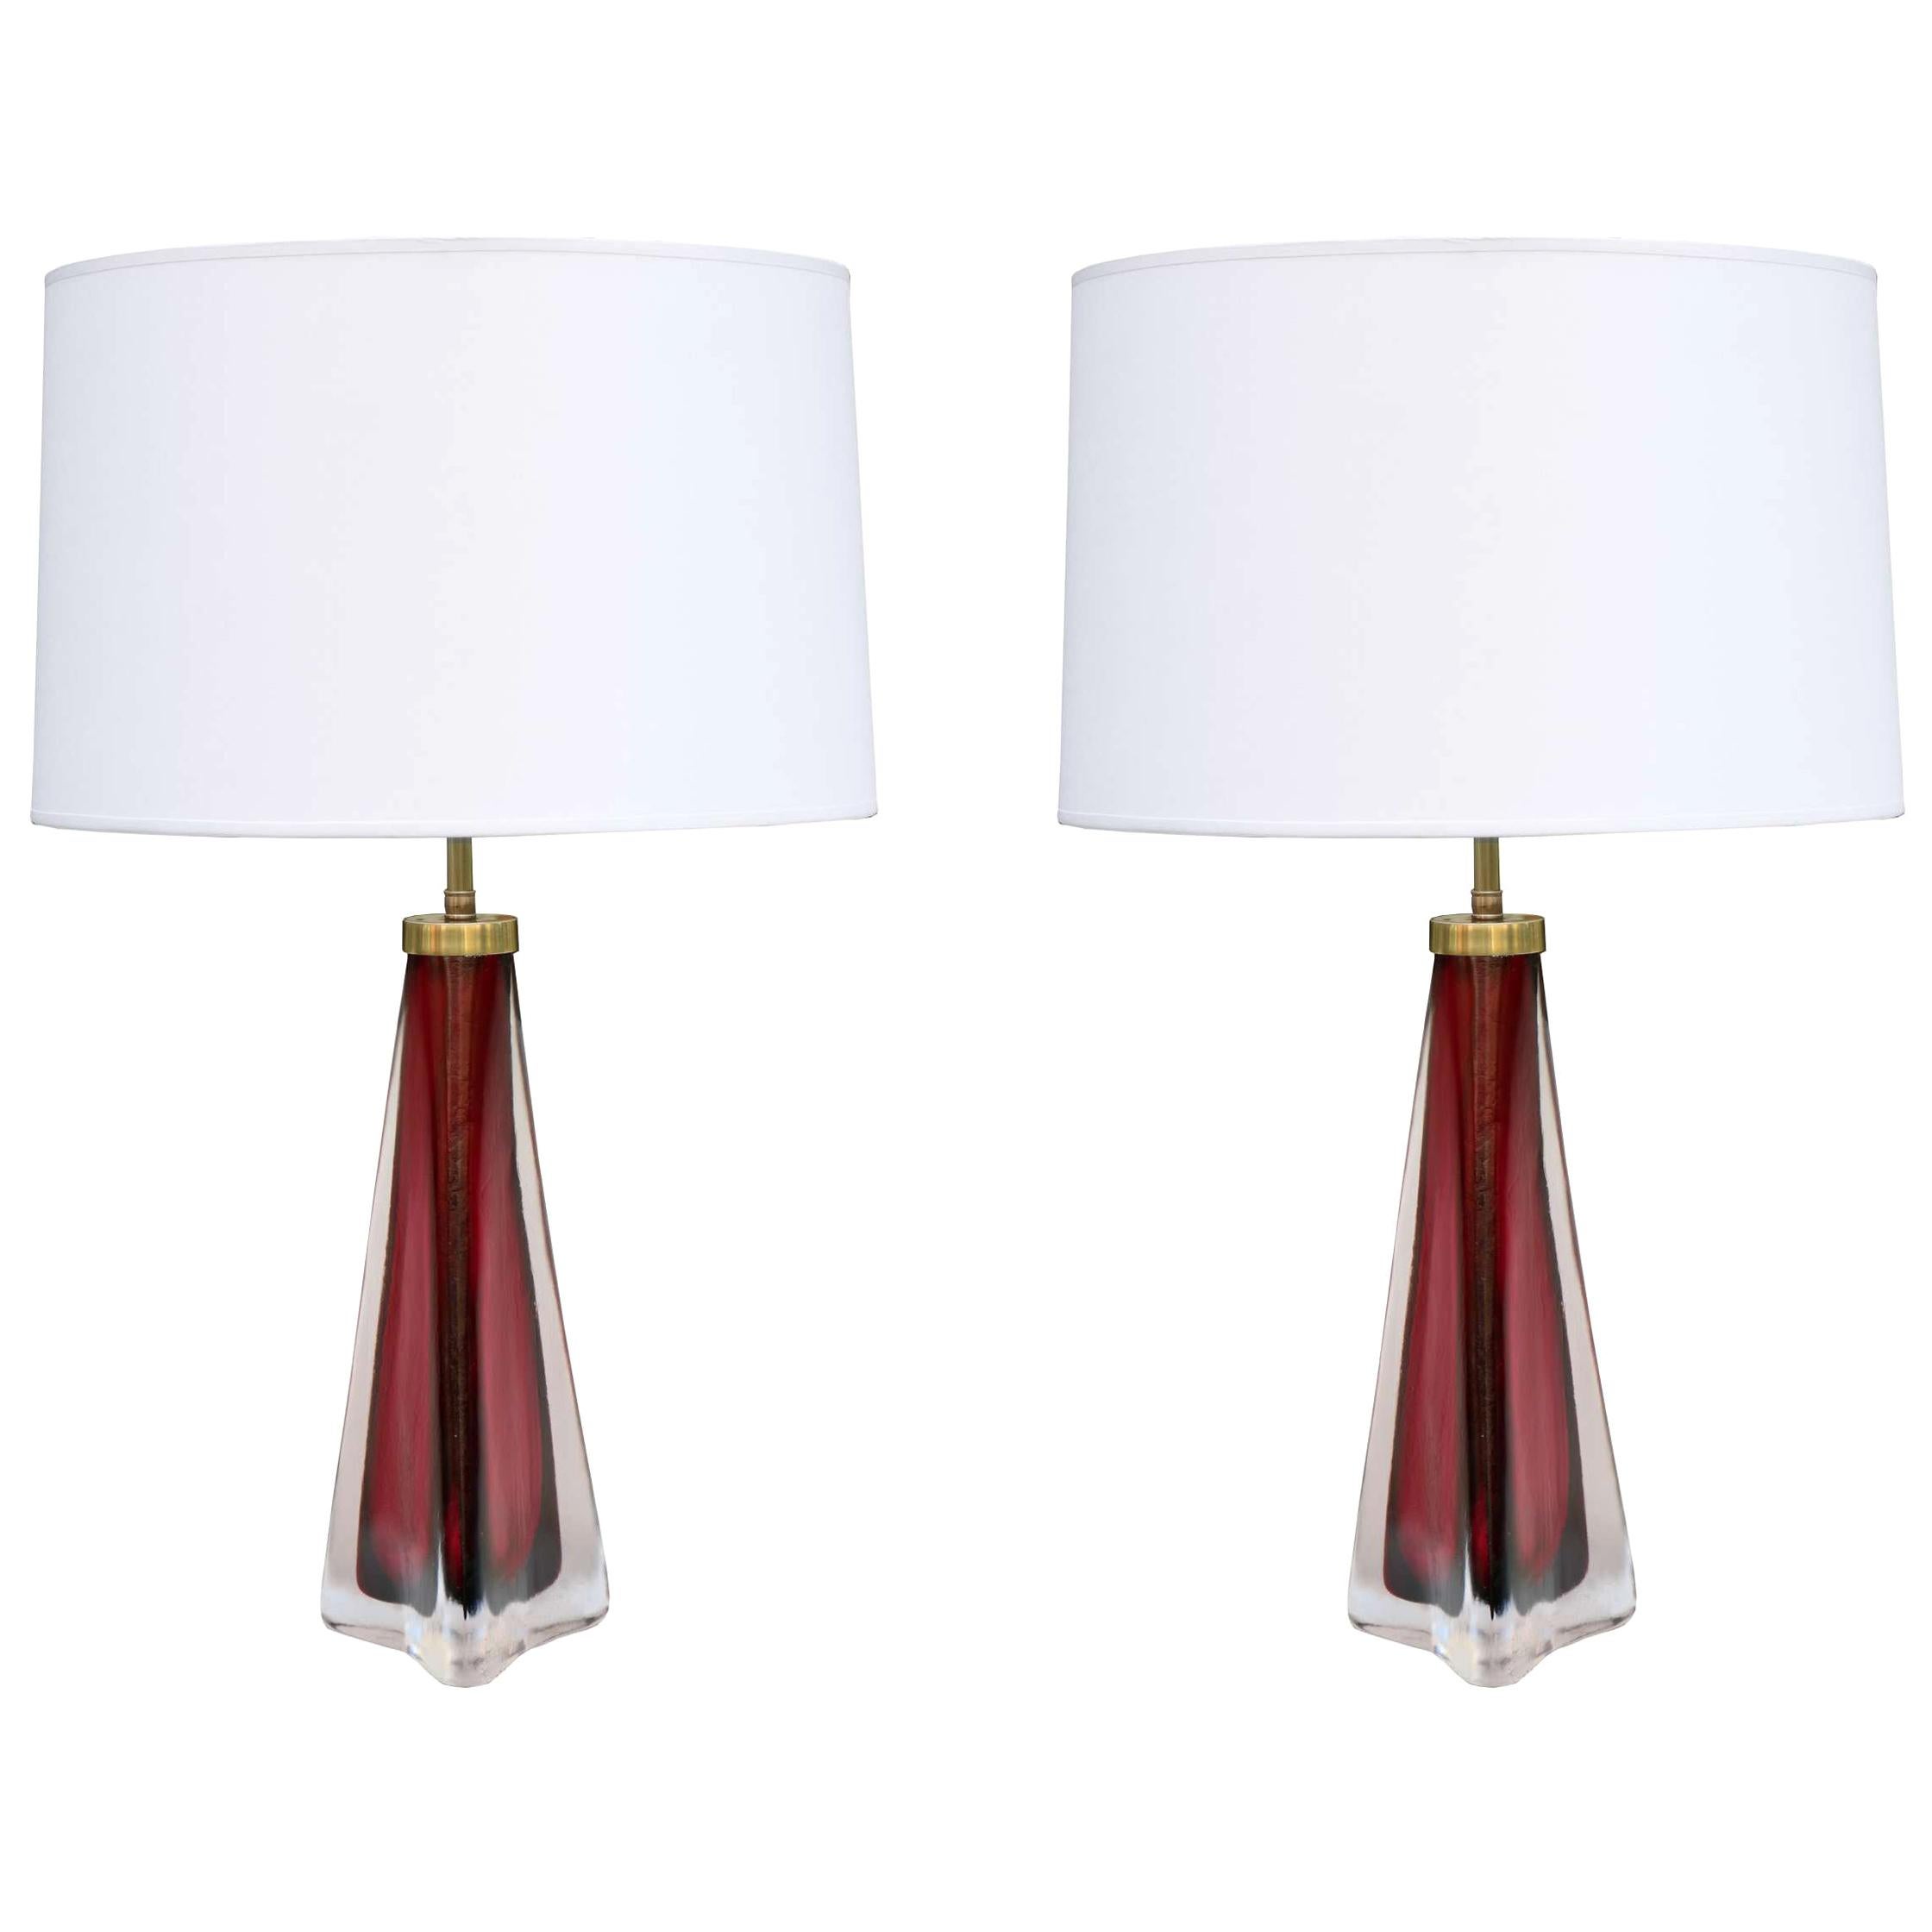 Pair of Orrefors Modernist Art Glass Table Lamps